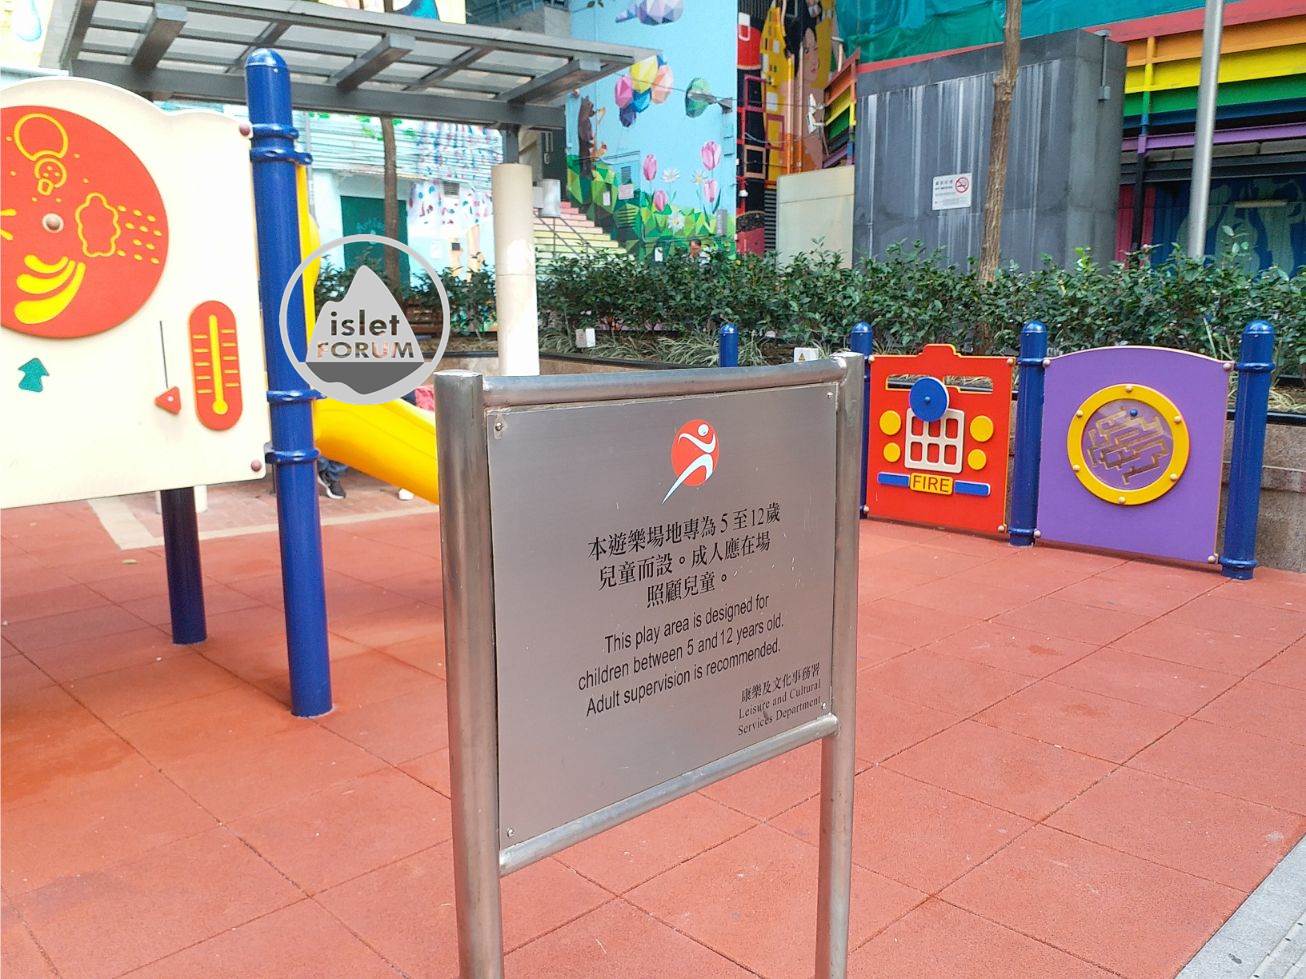 奇靈里兒童遊樂場 Ki Ling Lane Children's Playground (6).jpg